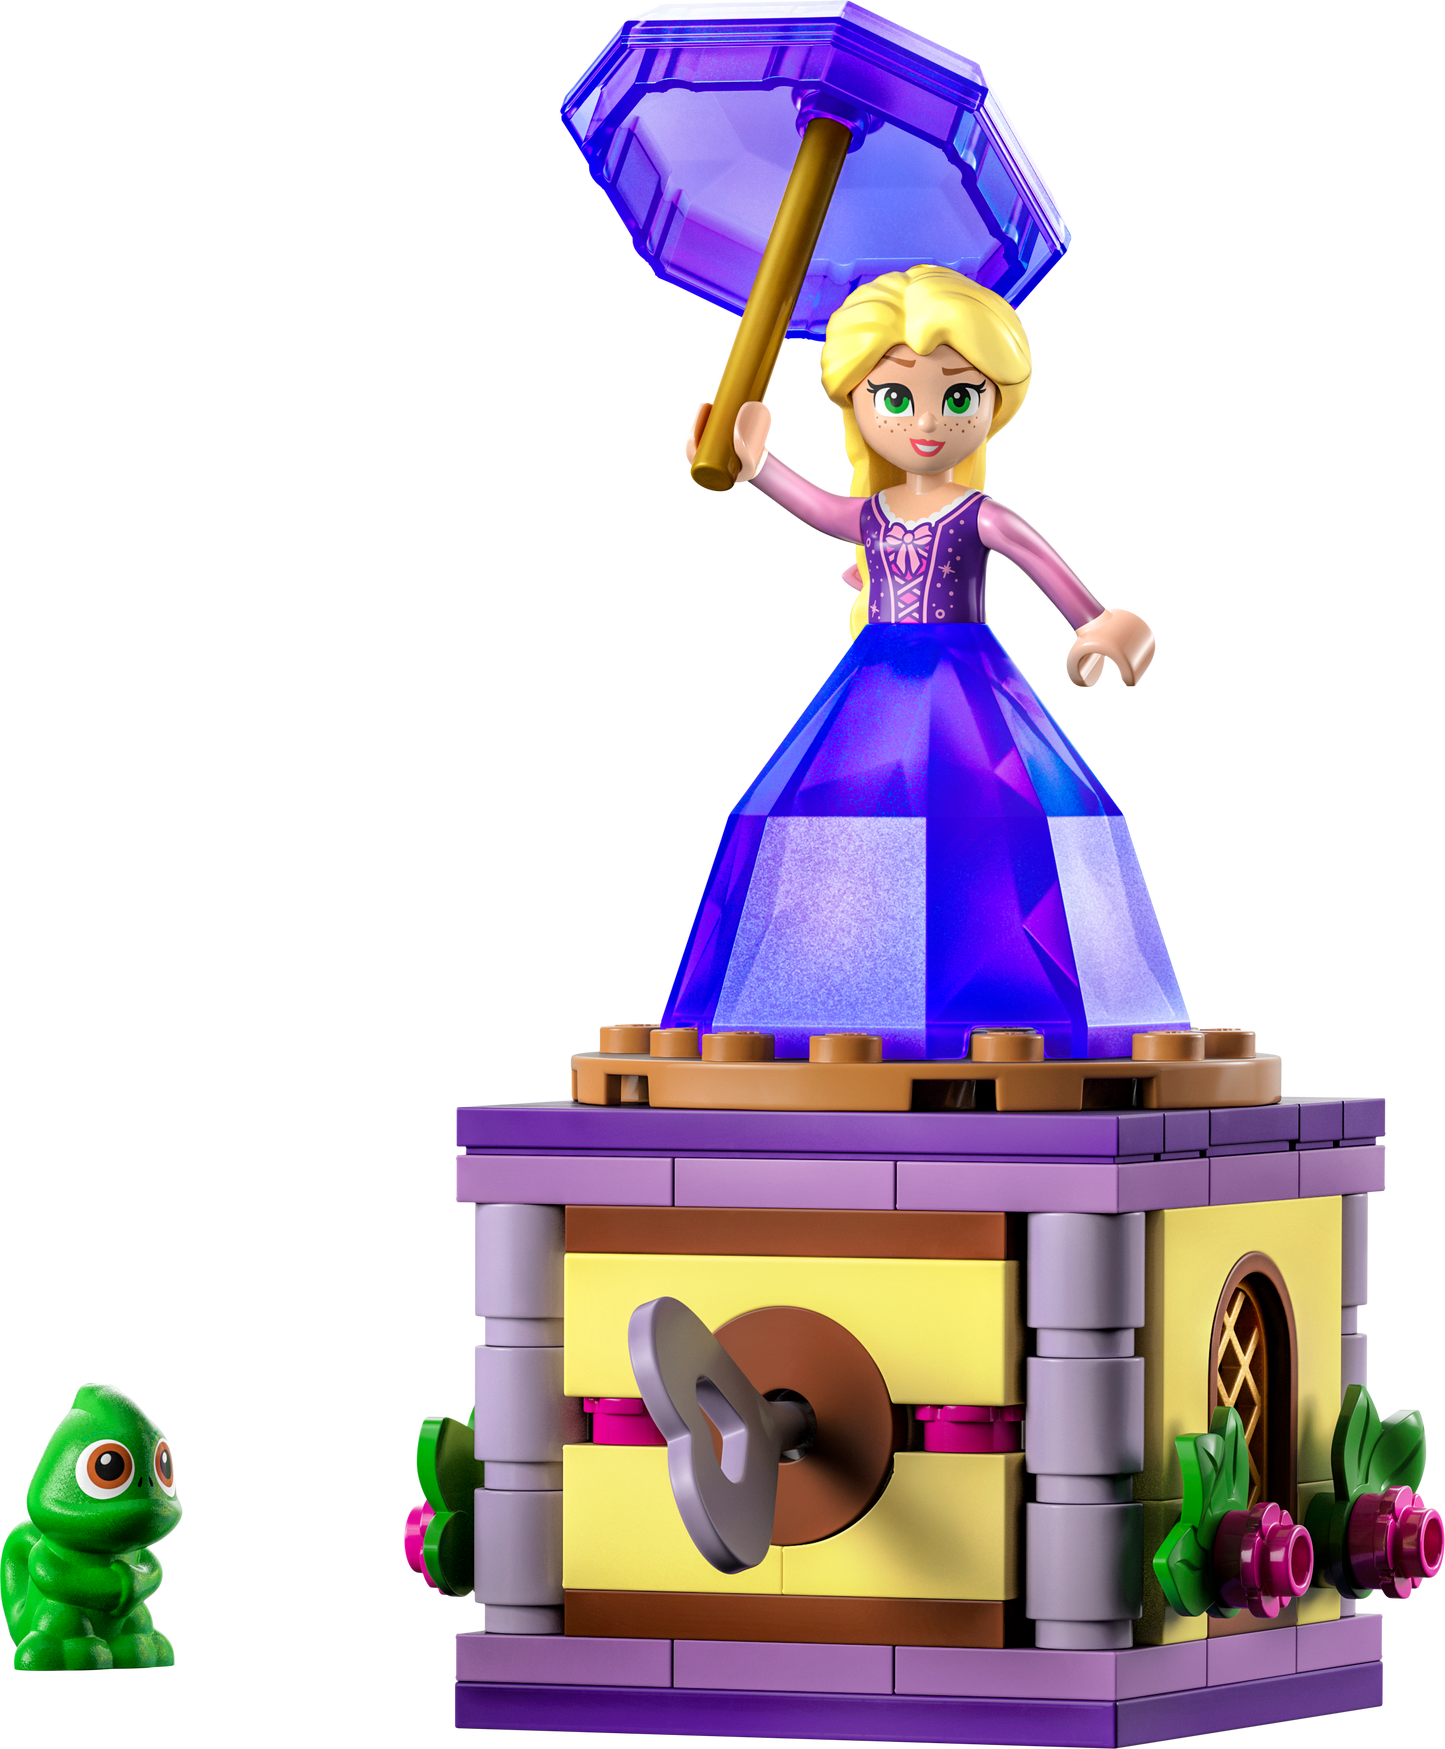 LEGO® Disney 43214 Rapunzel-Spieluhr